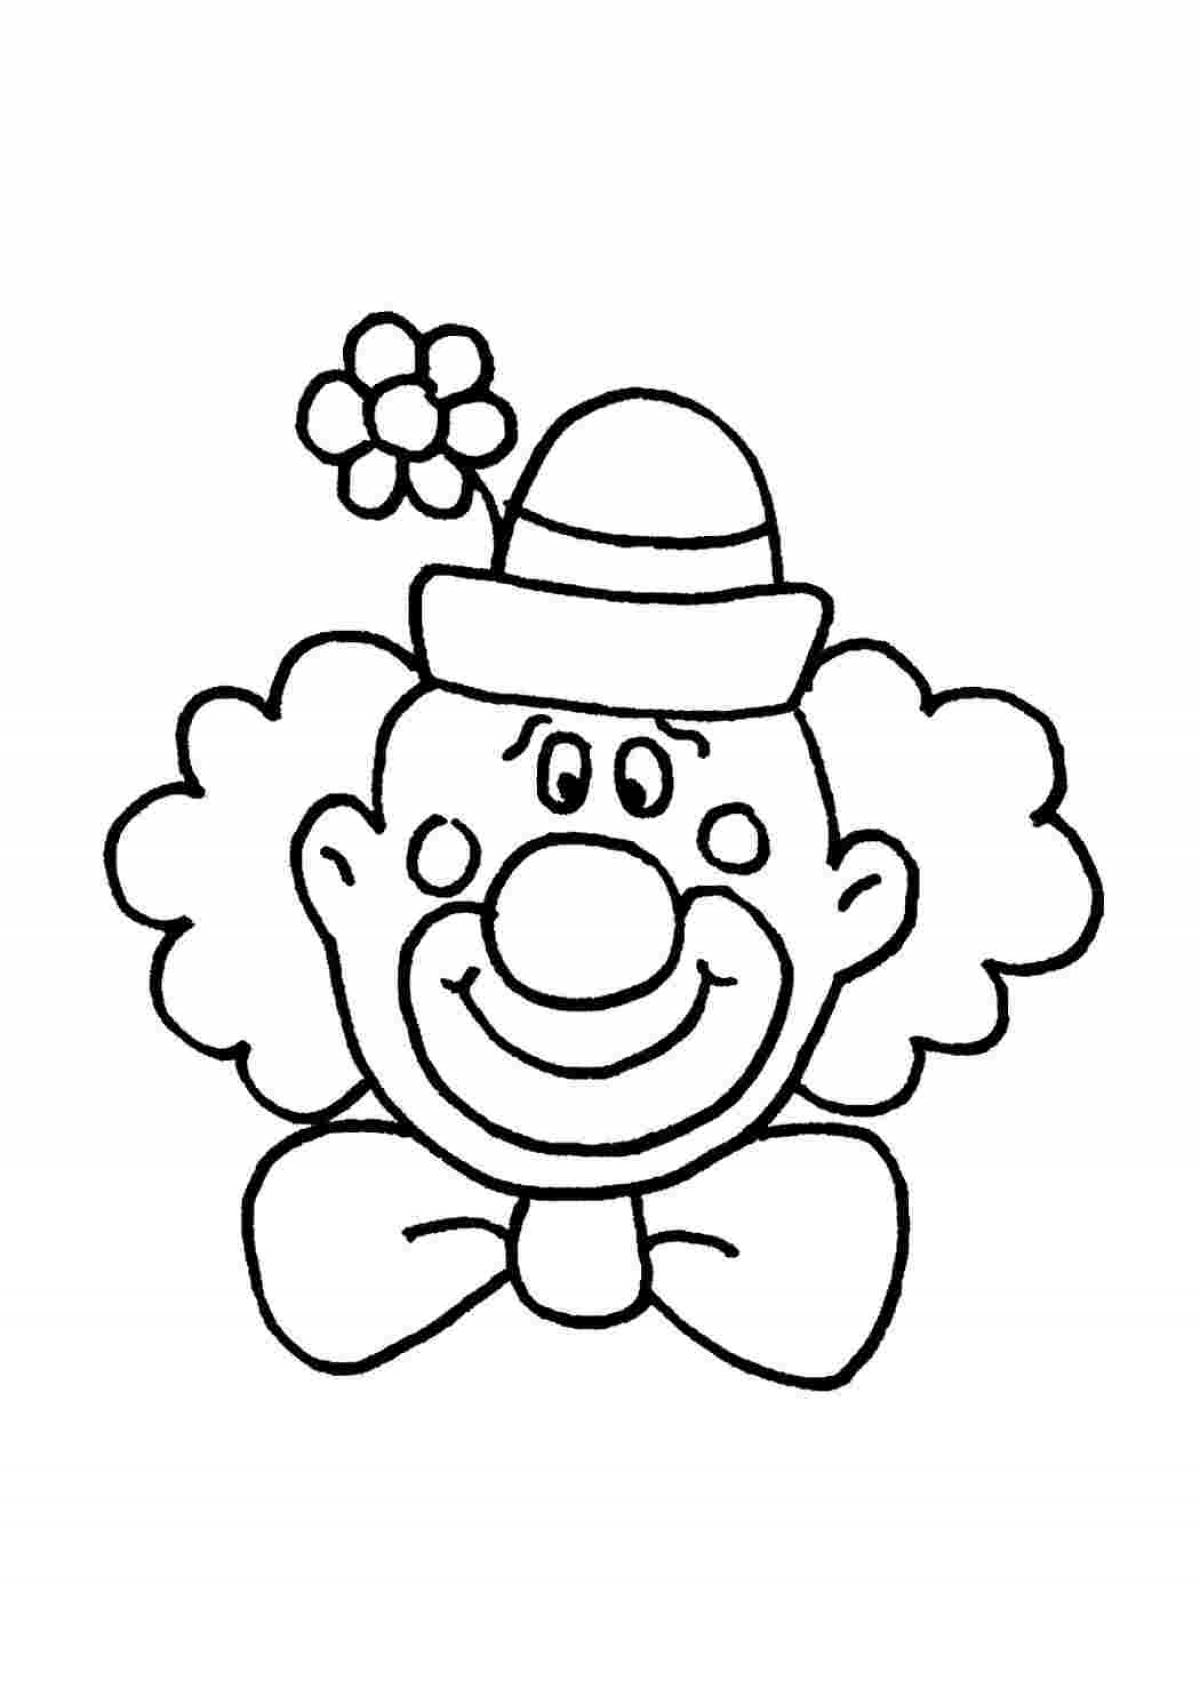 Раскраски 1 апреля день смеха для детей. Клоун раскраска. Клоун раскраска для малышей. Клоун раскраска для детей. Клоун для раскрашивания детям.